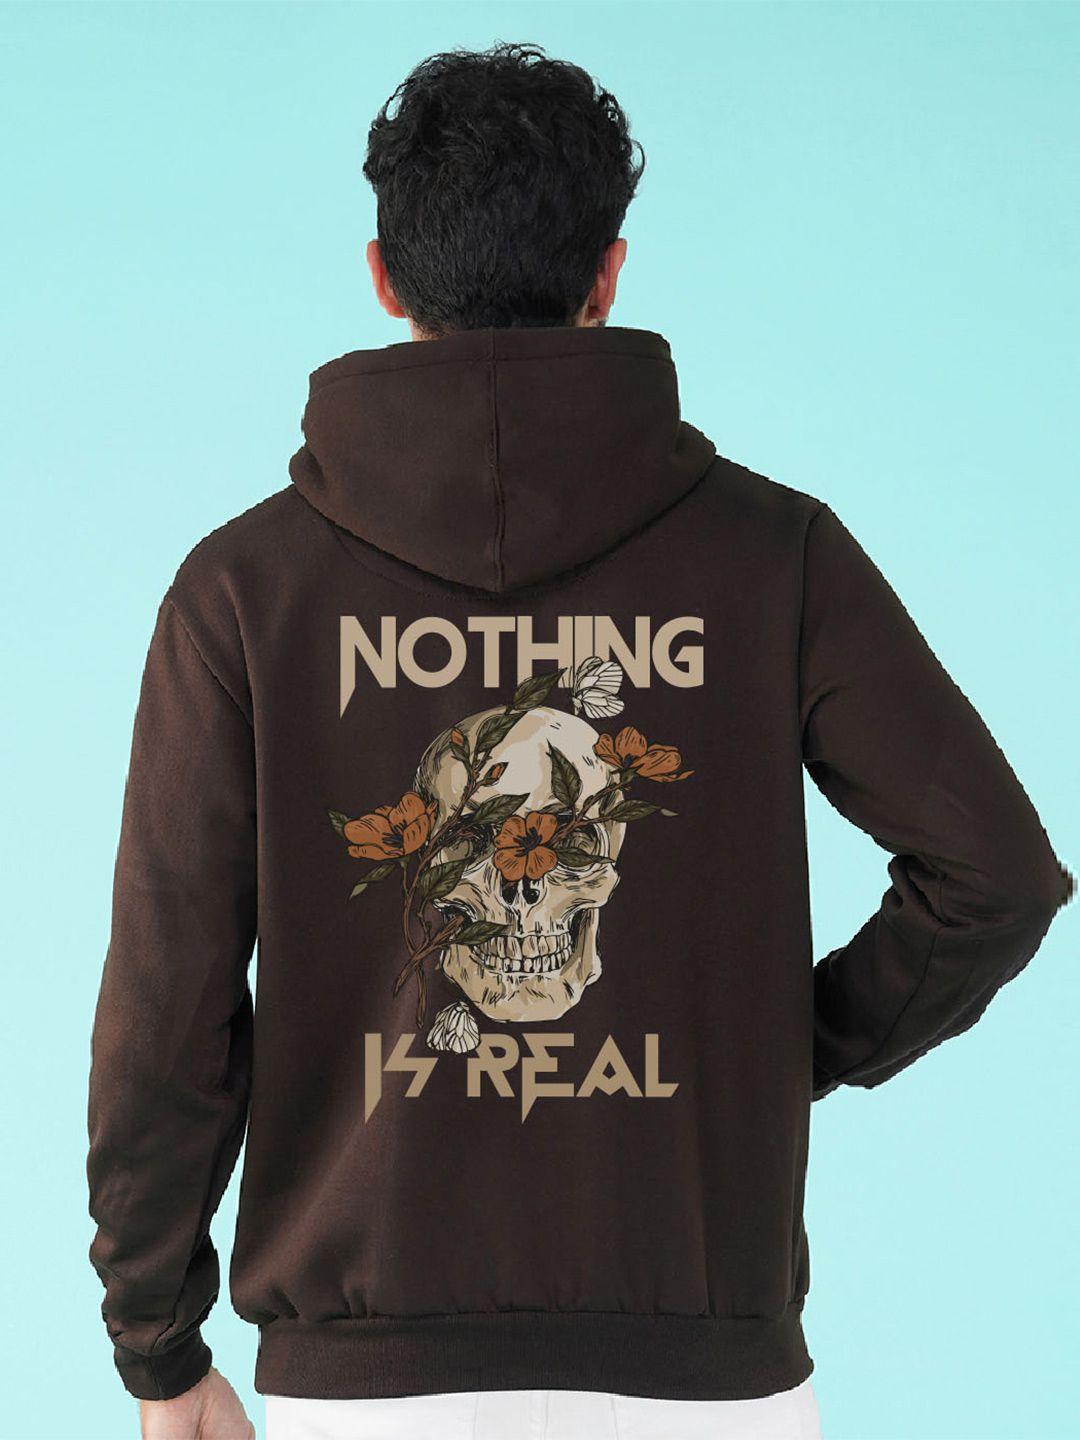 nusyl typography printed hooded sweatshirt